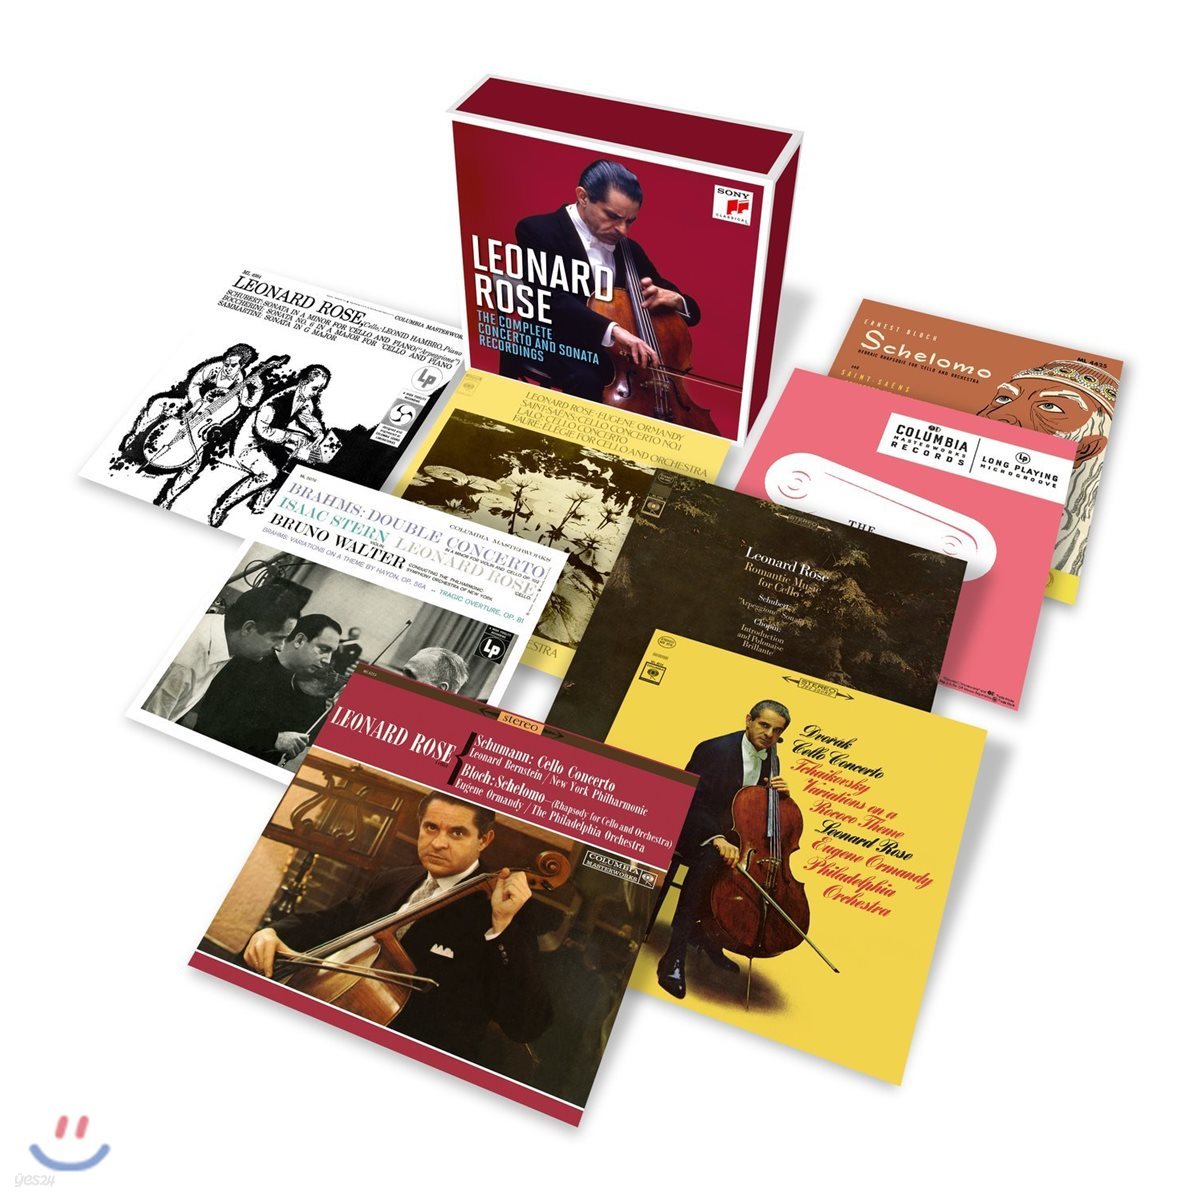 레너드 로즈 - 첼로 소나타 & 협주곡 녹음 전집 (Leonard Rose - The Complete Concerto and Sonata Recordings)